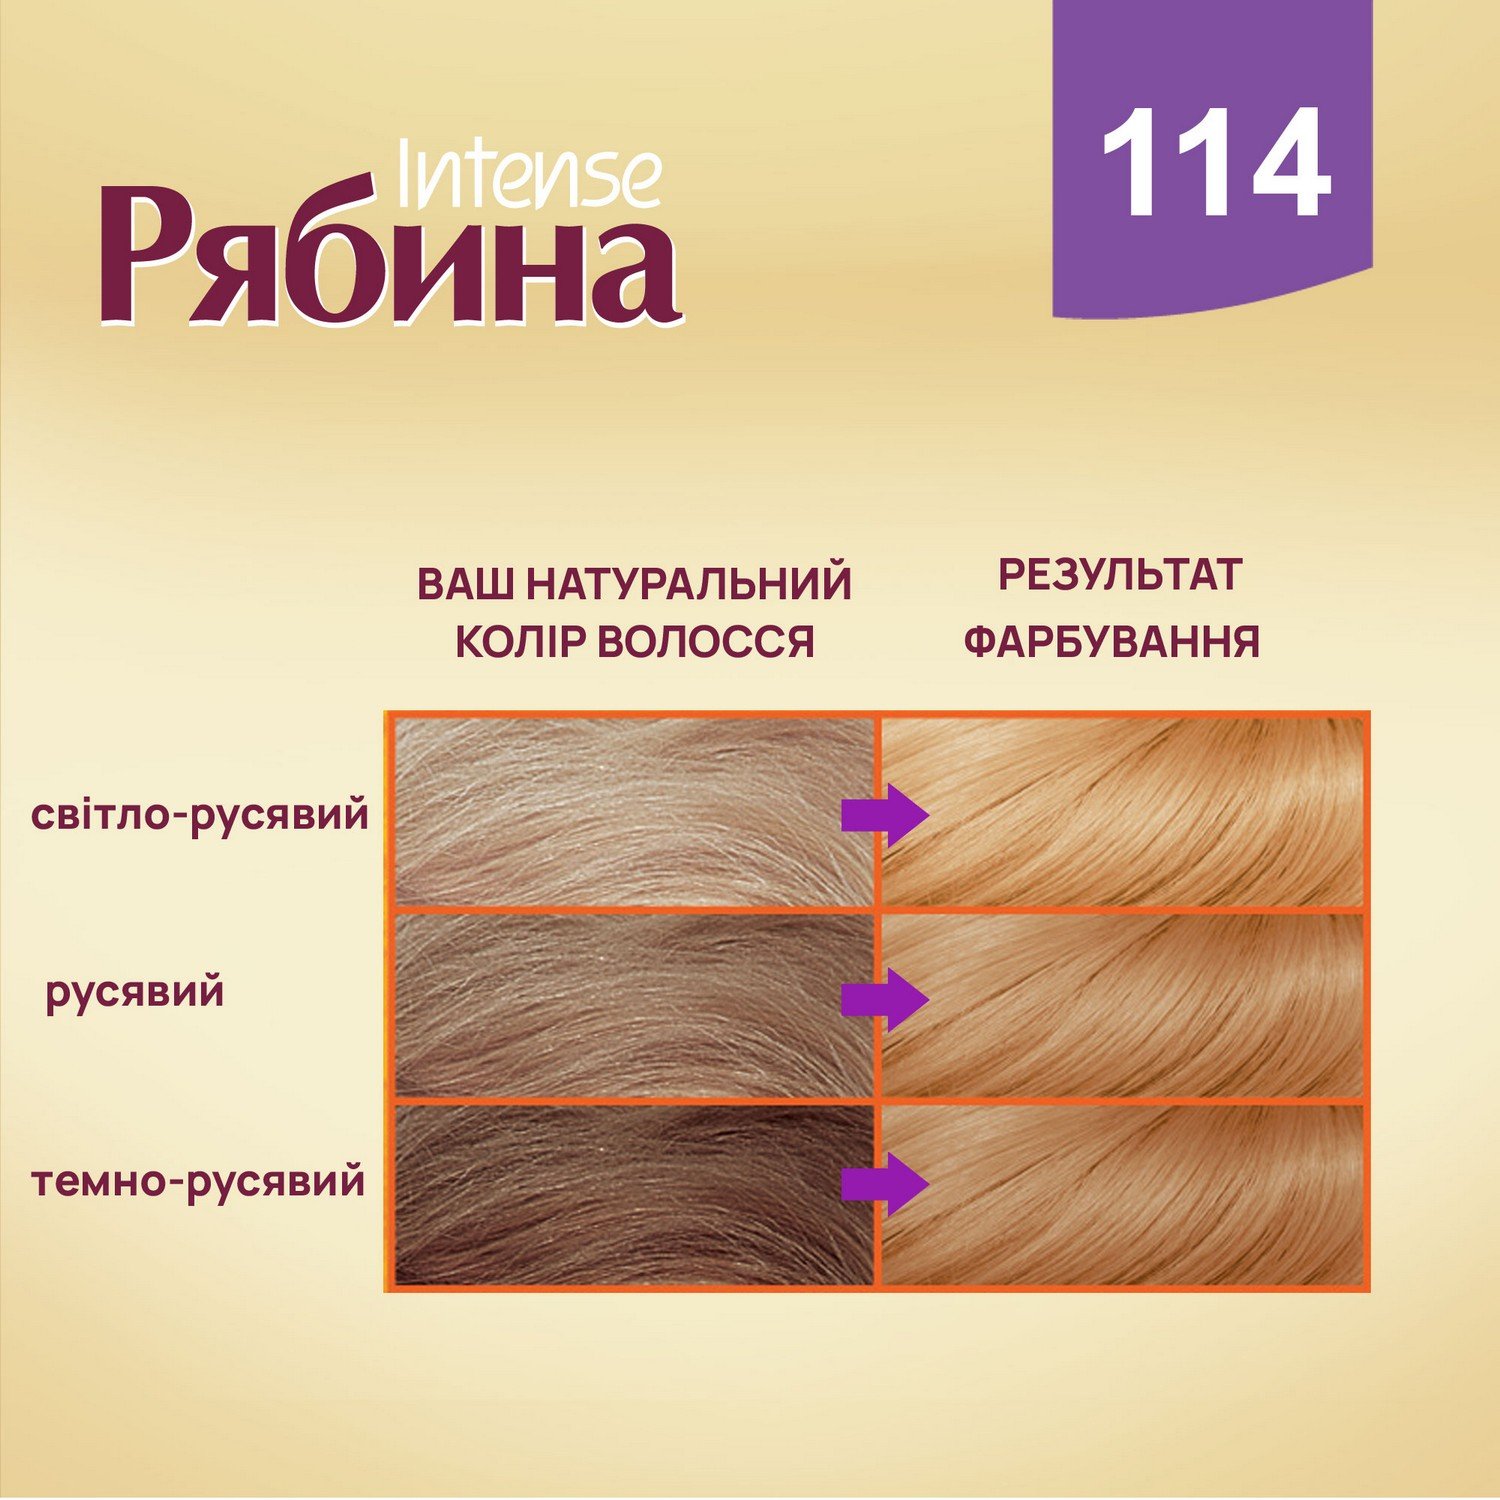 Крем-краска для волос Рябина Intense, оттенок 114 (Карамель), 138 мл - фото 6